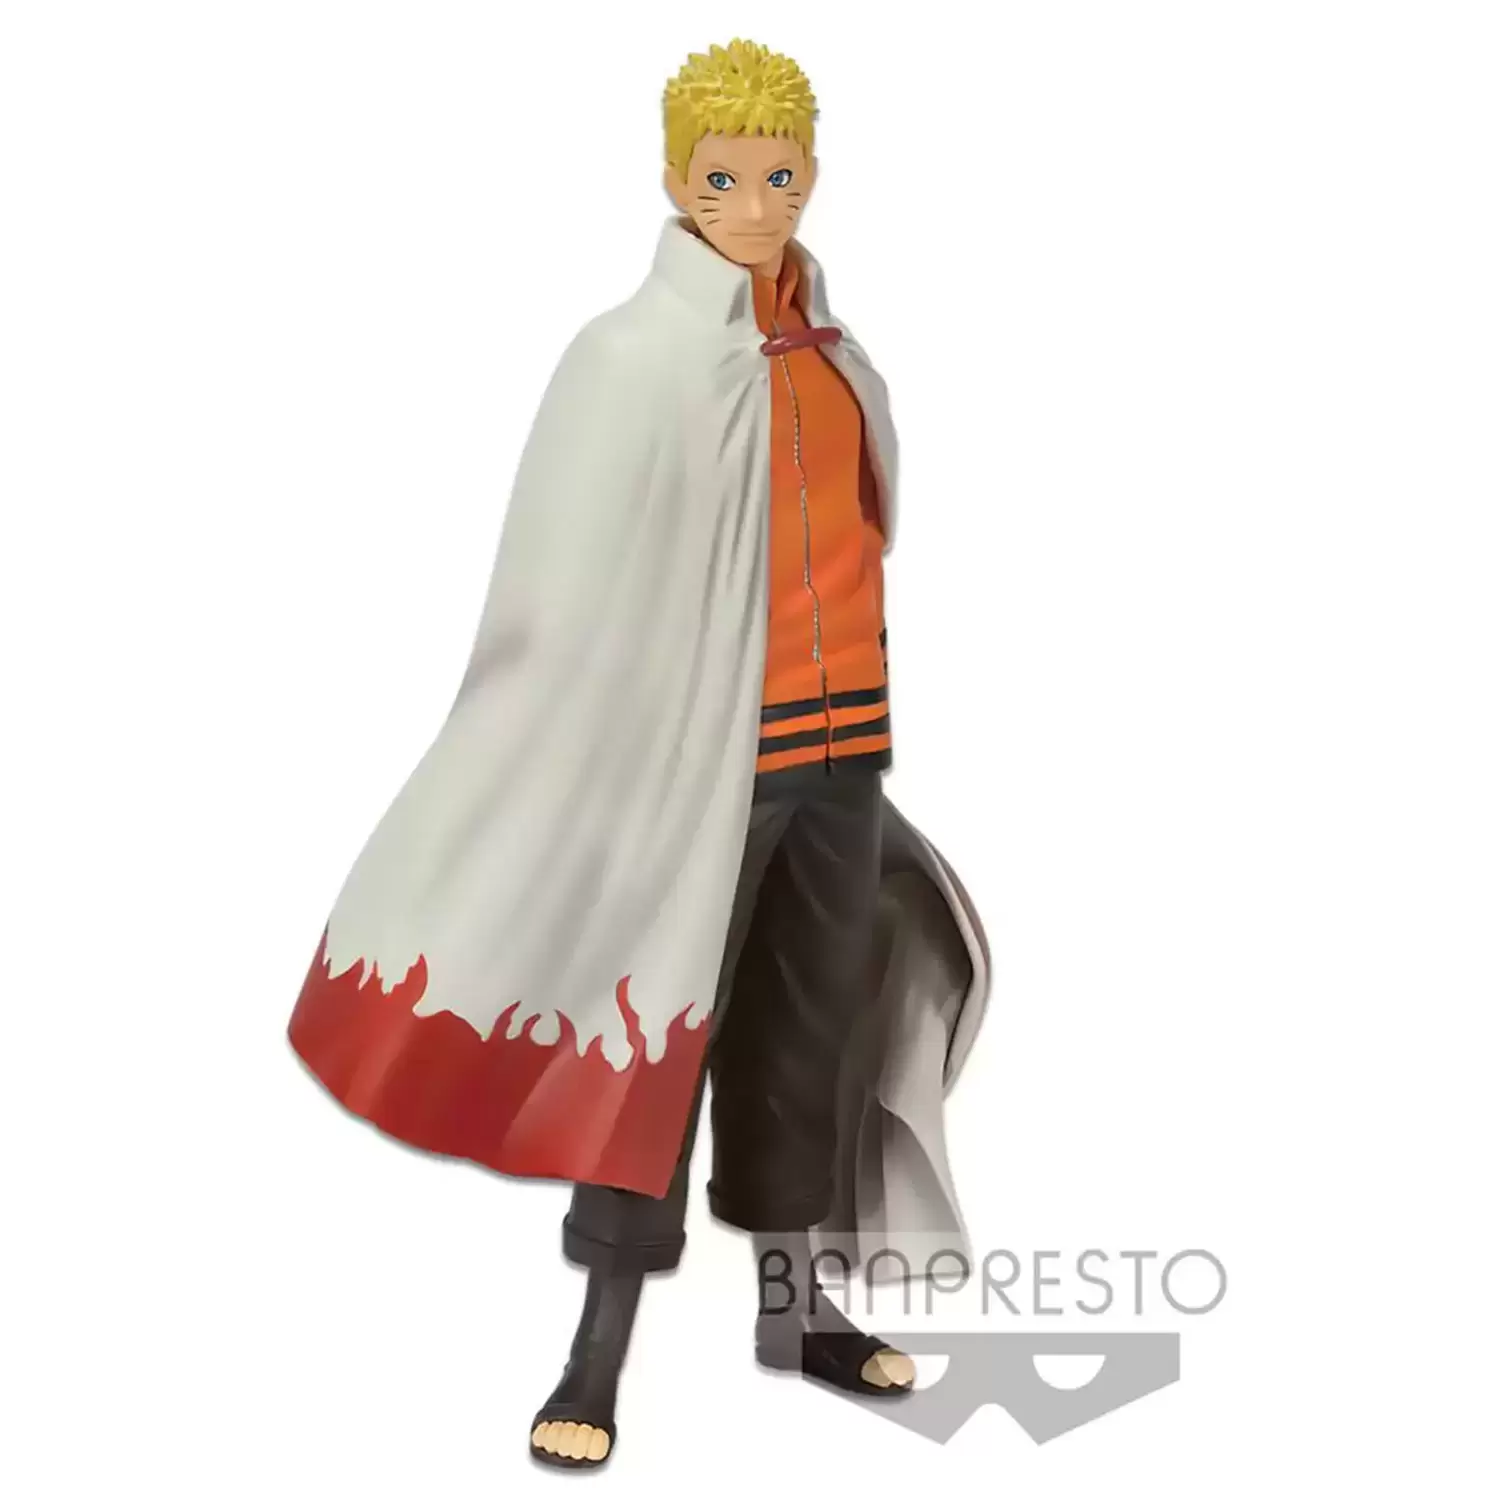 Naruto Banpresto action figures - Naruto Shinobi Relations DXF - Boruto